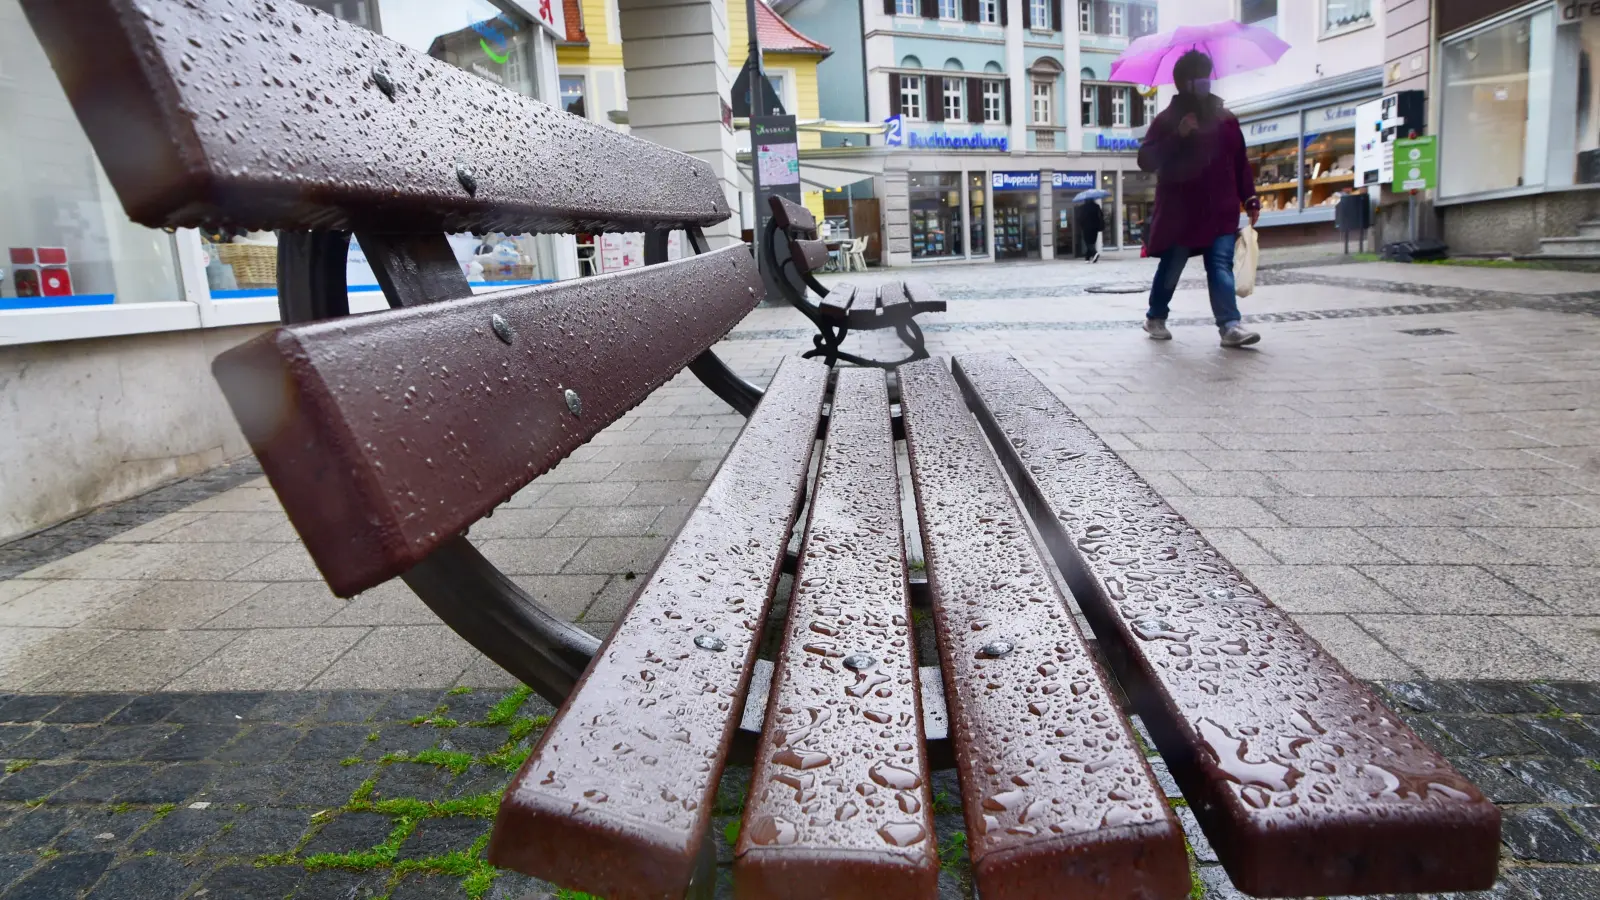 Der Regenschirm ist wie hier in Ansbach seit Wochen ein treuer Begleiter. Gefühlt hat es seit Mitte Oktober fast jeden Tag geregnet. (Archivfoto: Jim Albright)